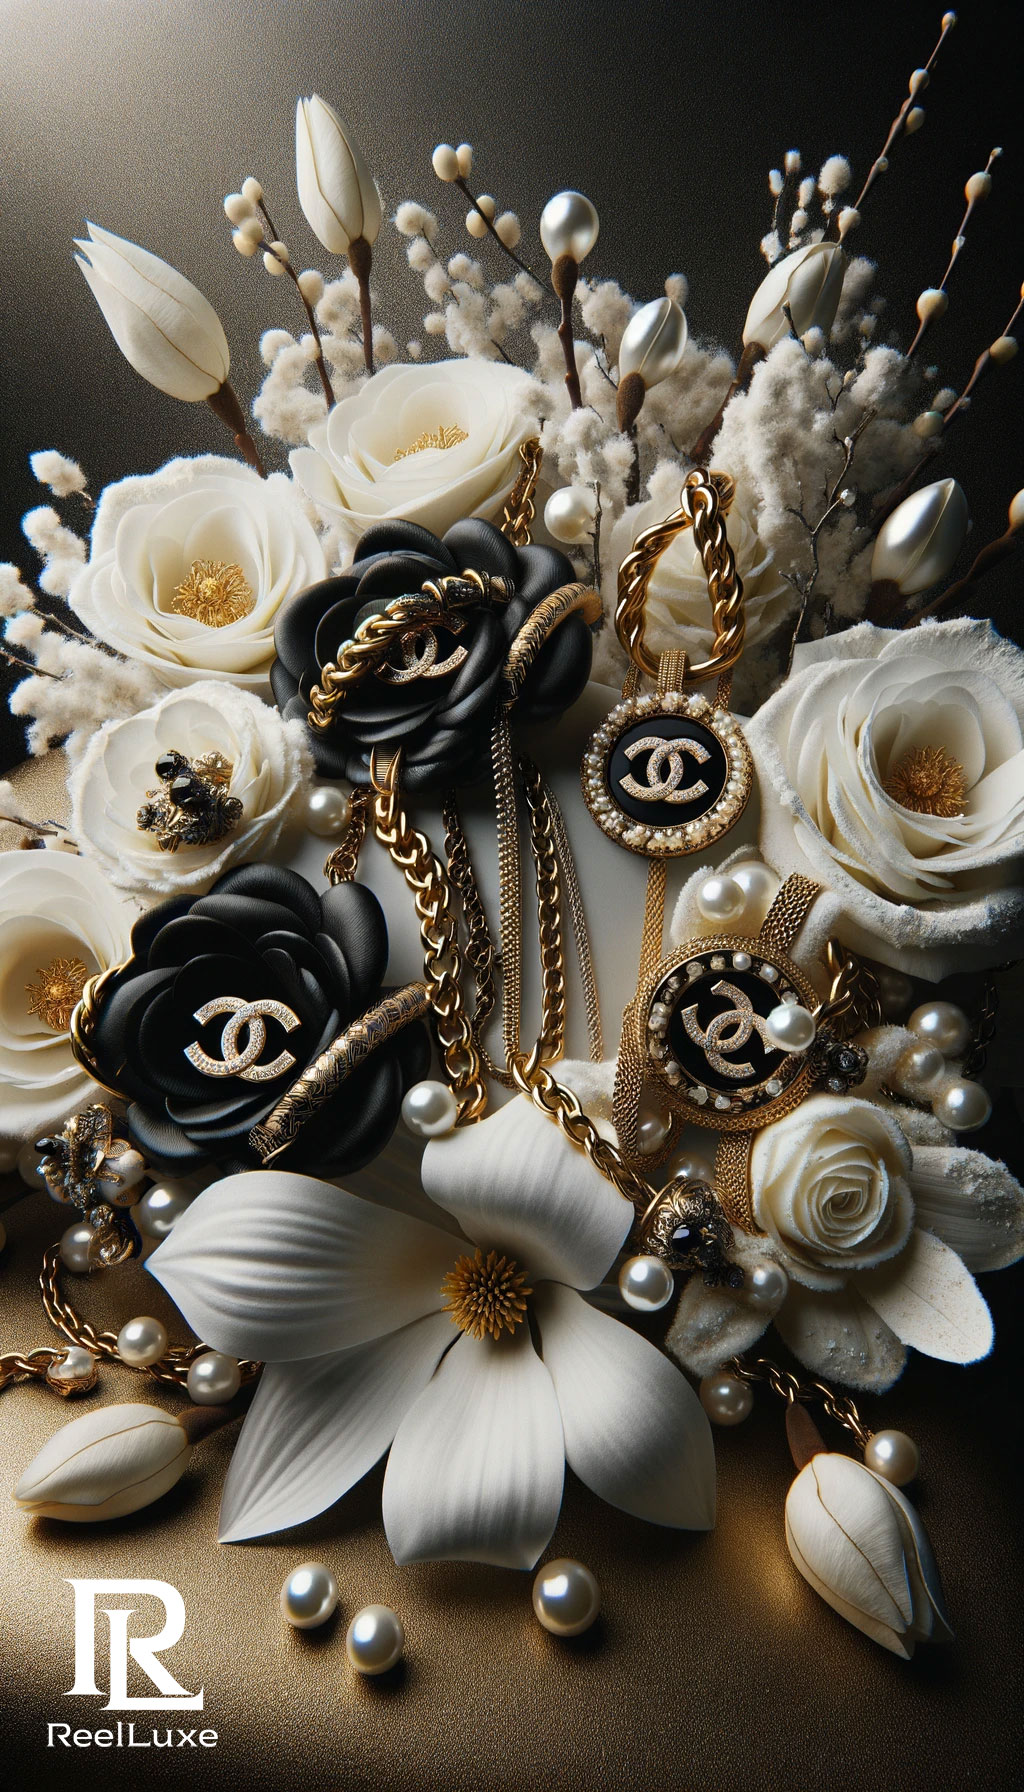 Romance dans l'air : Idées de cadeaux élégants pour la Saint-Valentin - Chanel